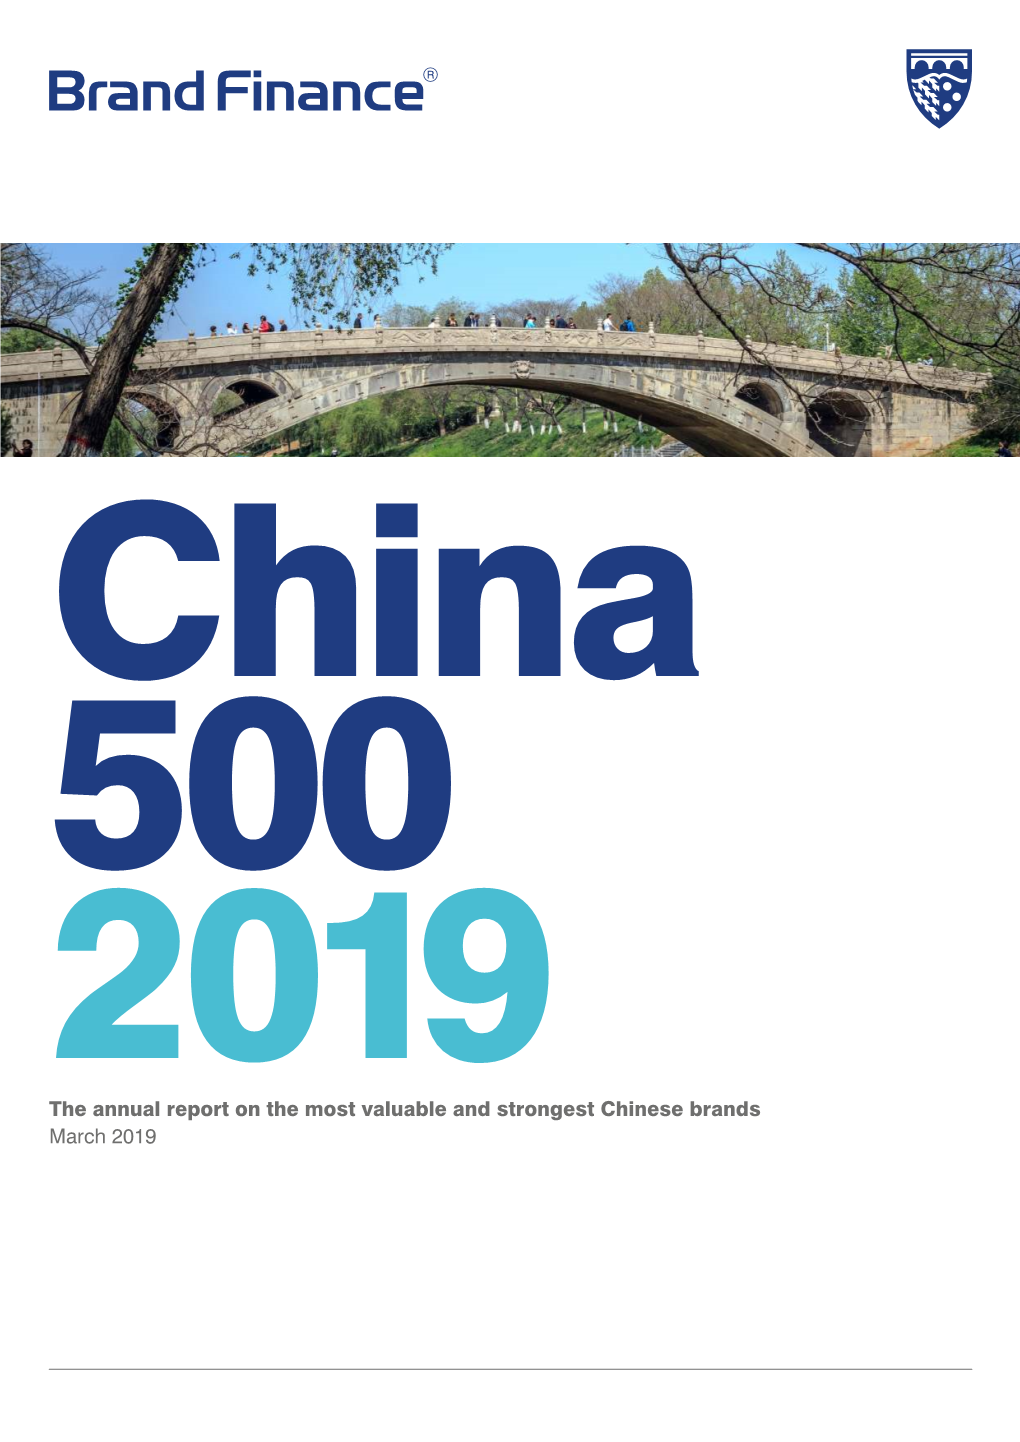 China 500 2019 Report